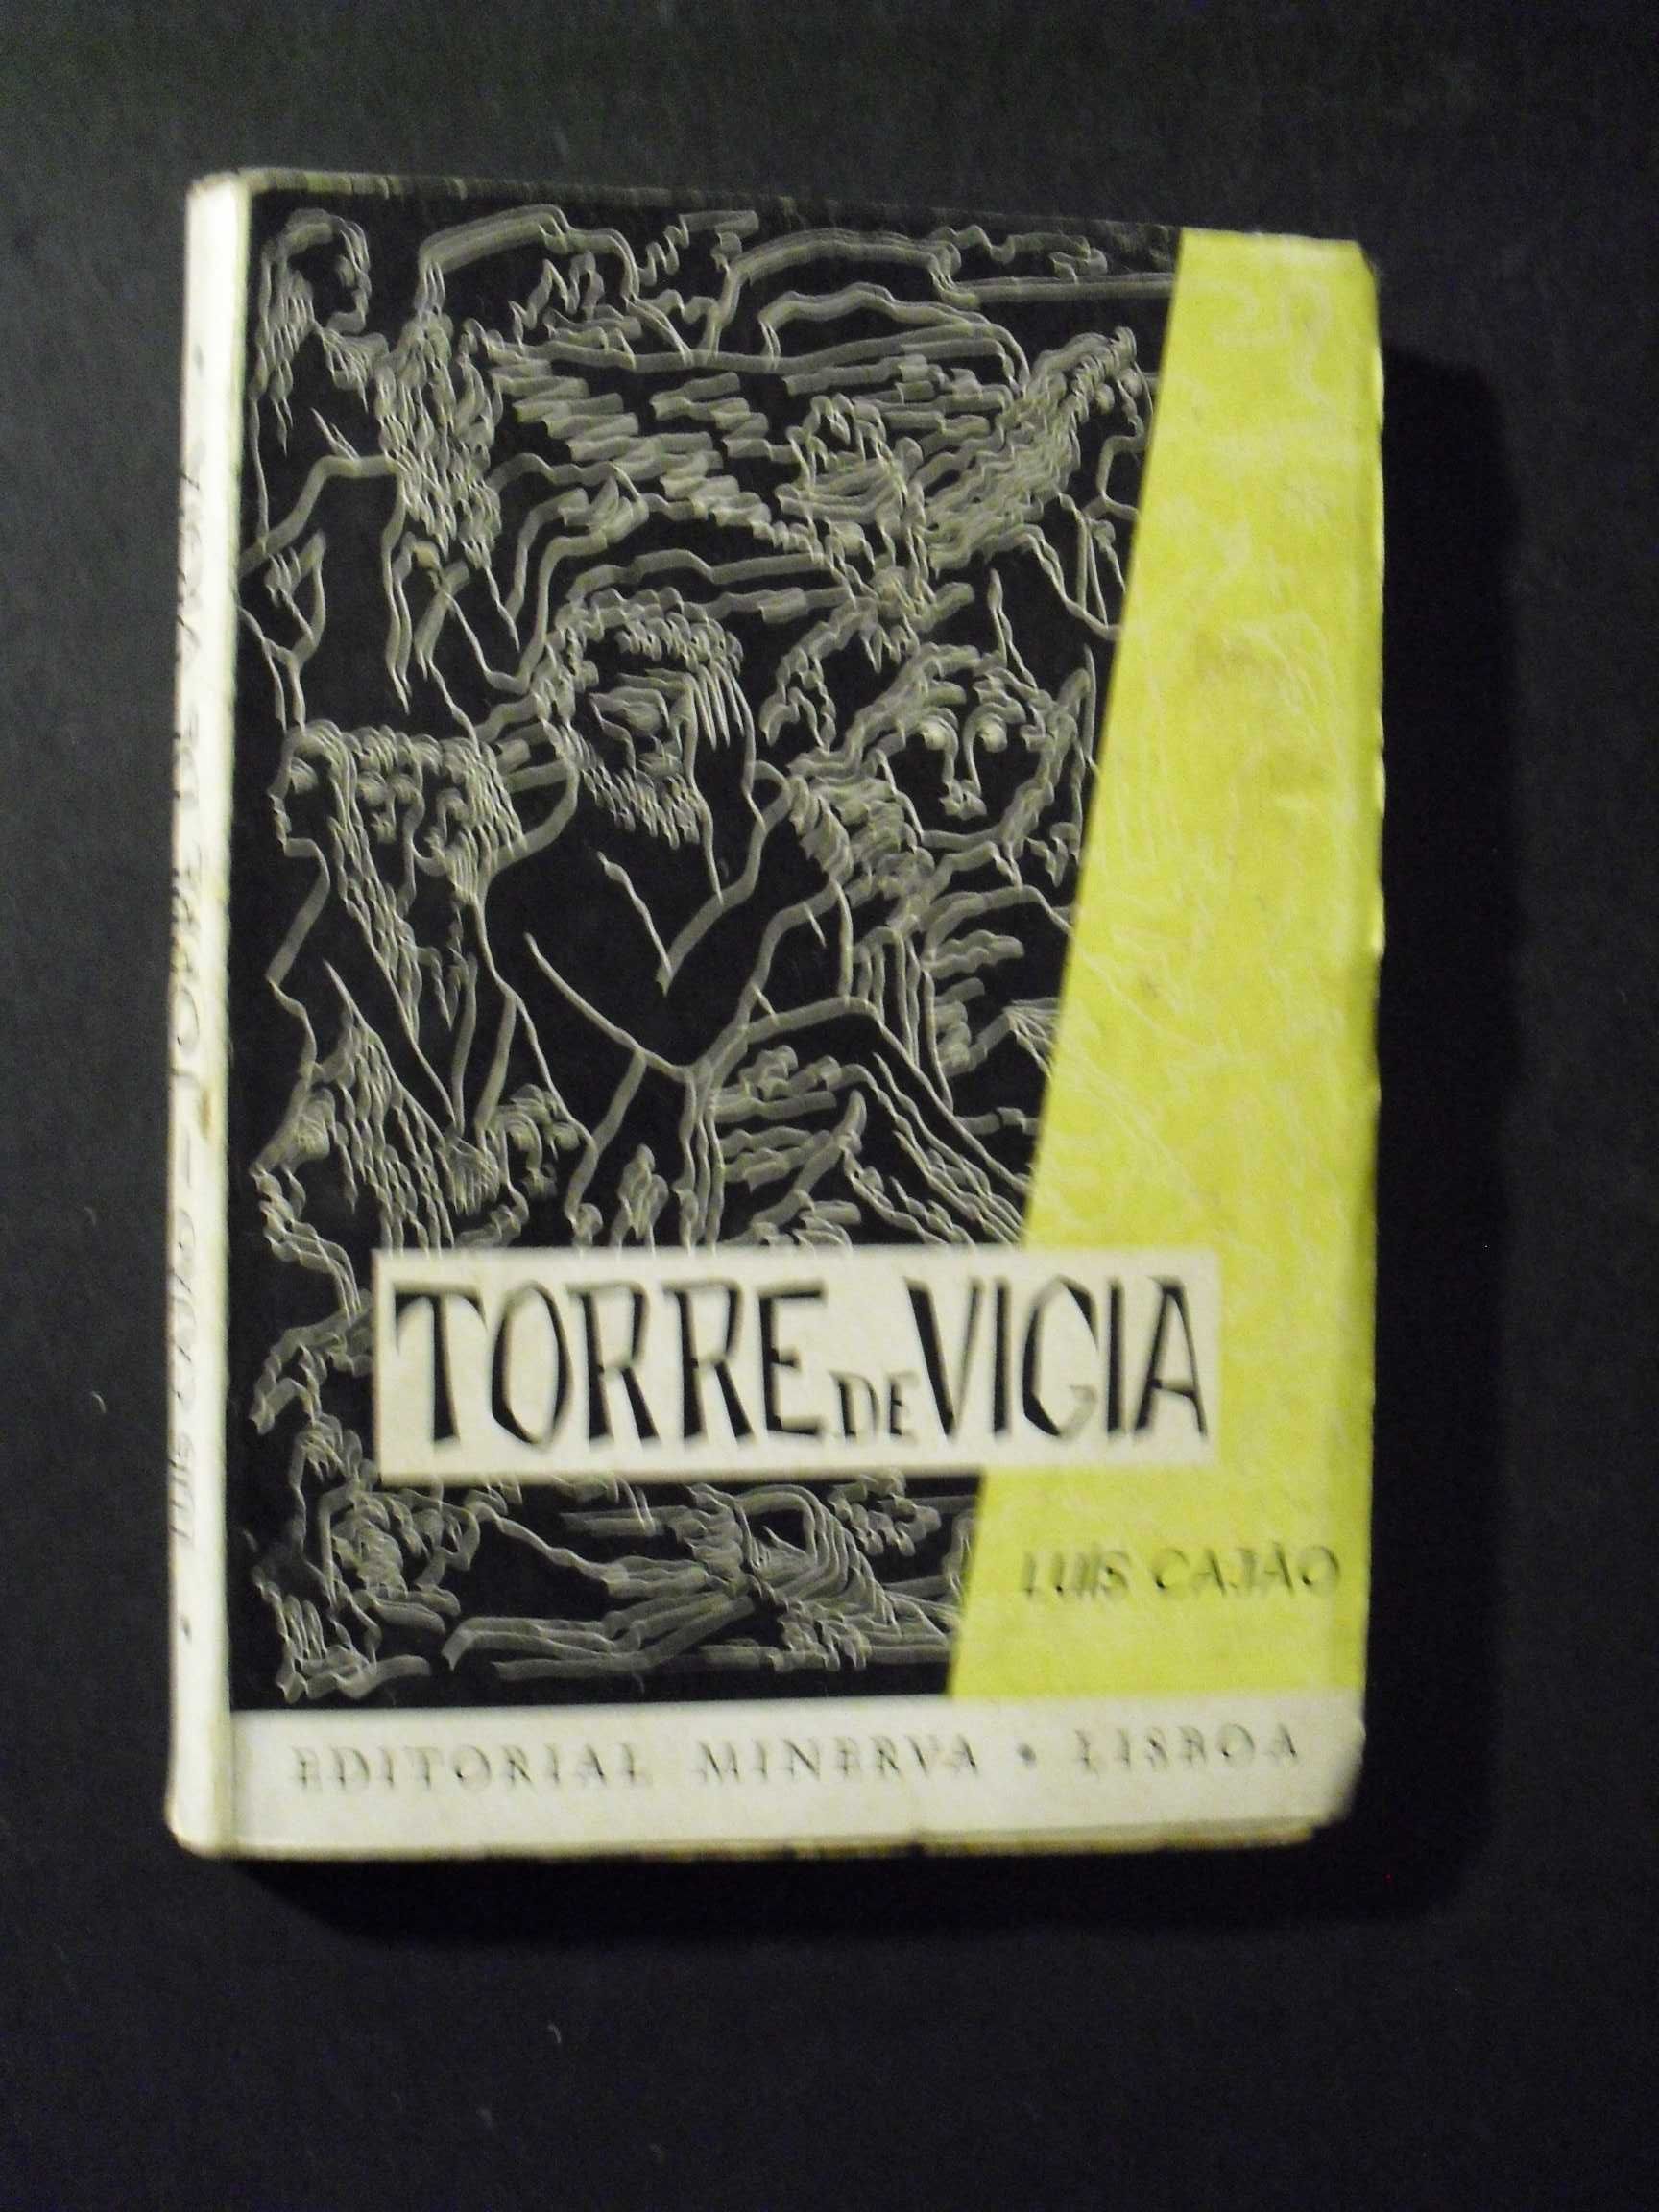 Cajão (Luis);Torre de Vigia;Editorial Minerva,Lisboa,1ª Edição,1954,